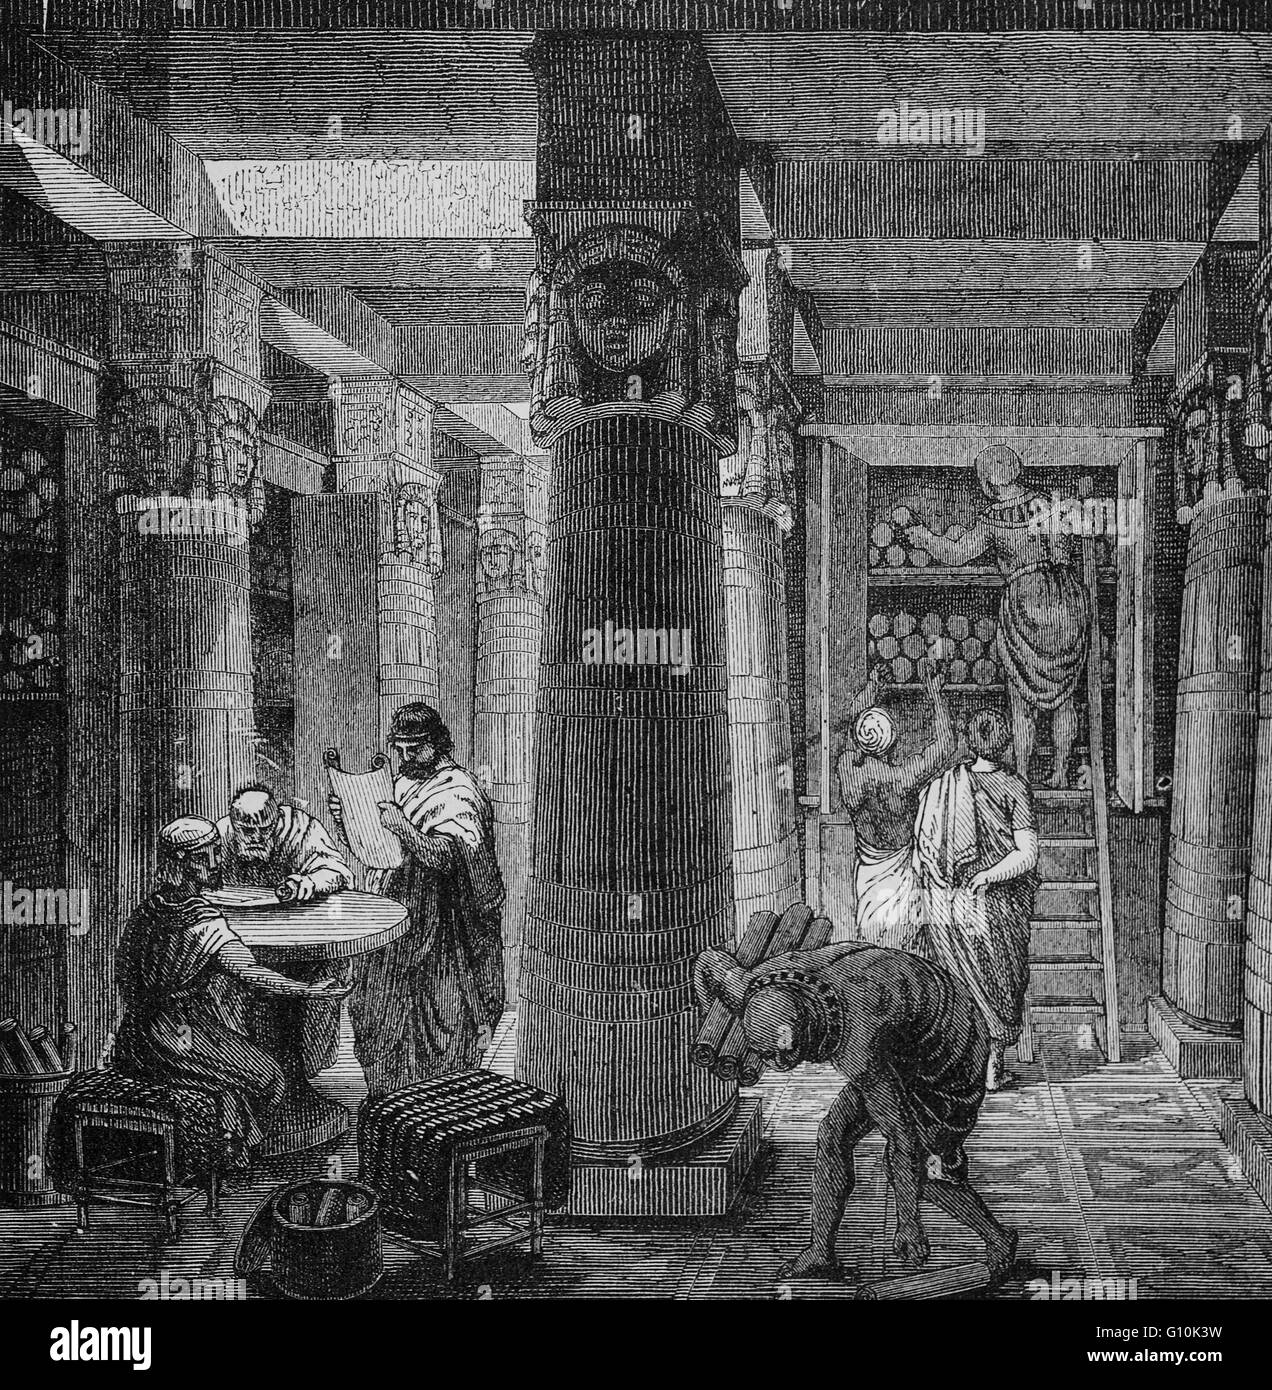 La Biblioteca di Alessandria fondata c.331 A.C. da Alessandro il Grande. Originariamente un piccolo antica città egiziana, divenne un importante centro di greco fino alla conquista musulmana di Egitto in ANNUNCIO 641, Foto Stock